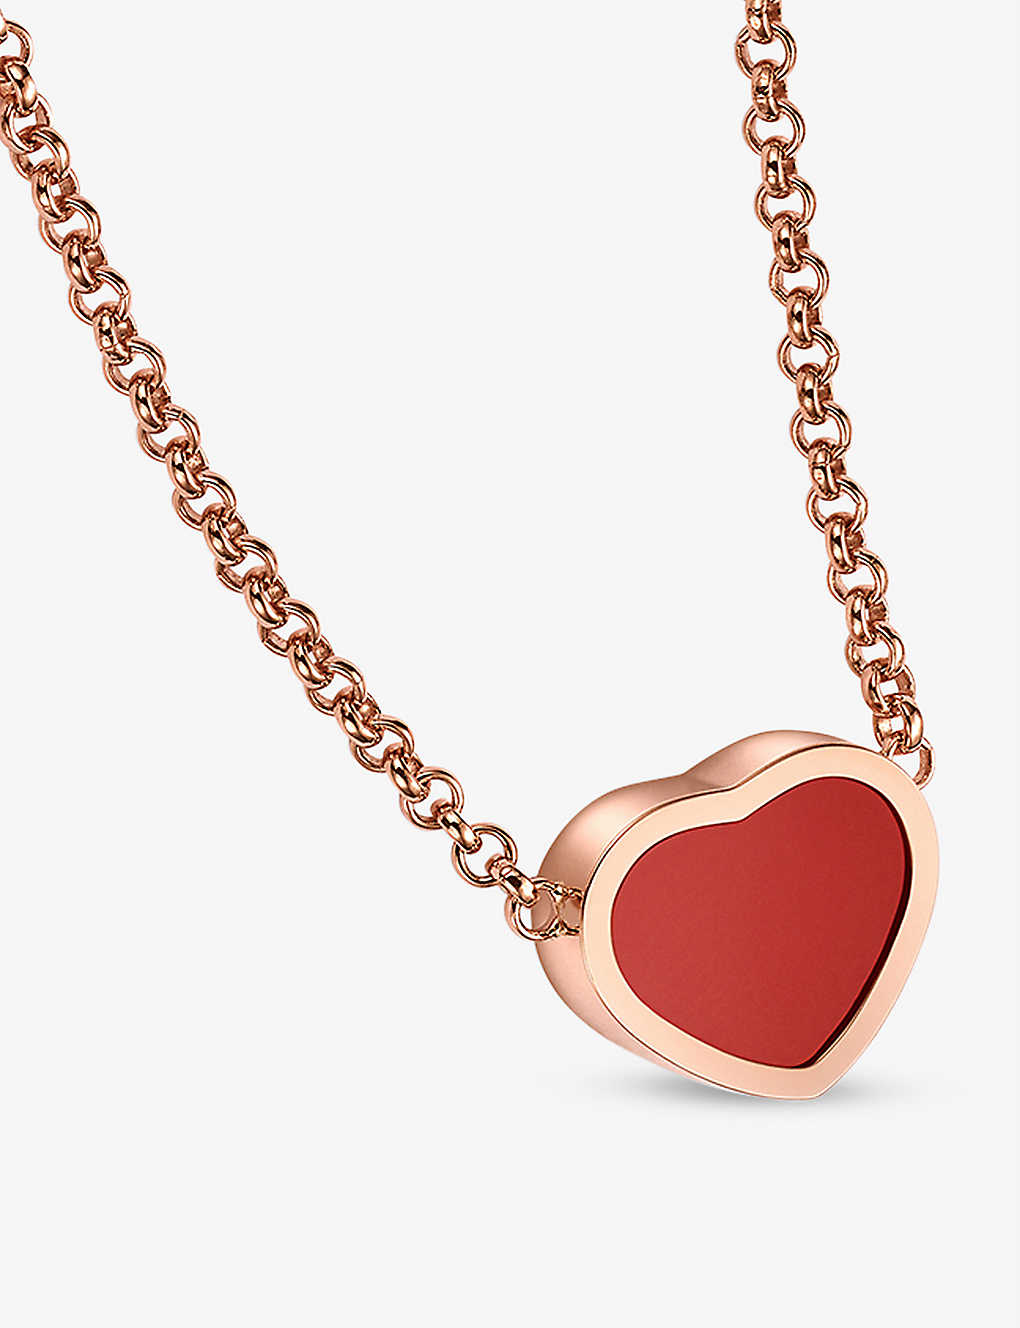 Chopard Women's My Happy Hearts 18k Rose Gold & Carnelian Pendant Necklace